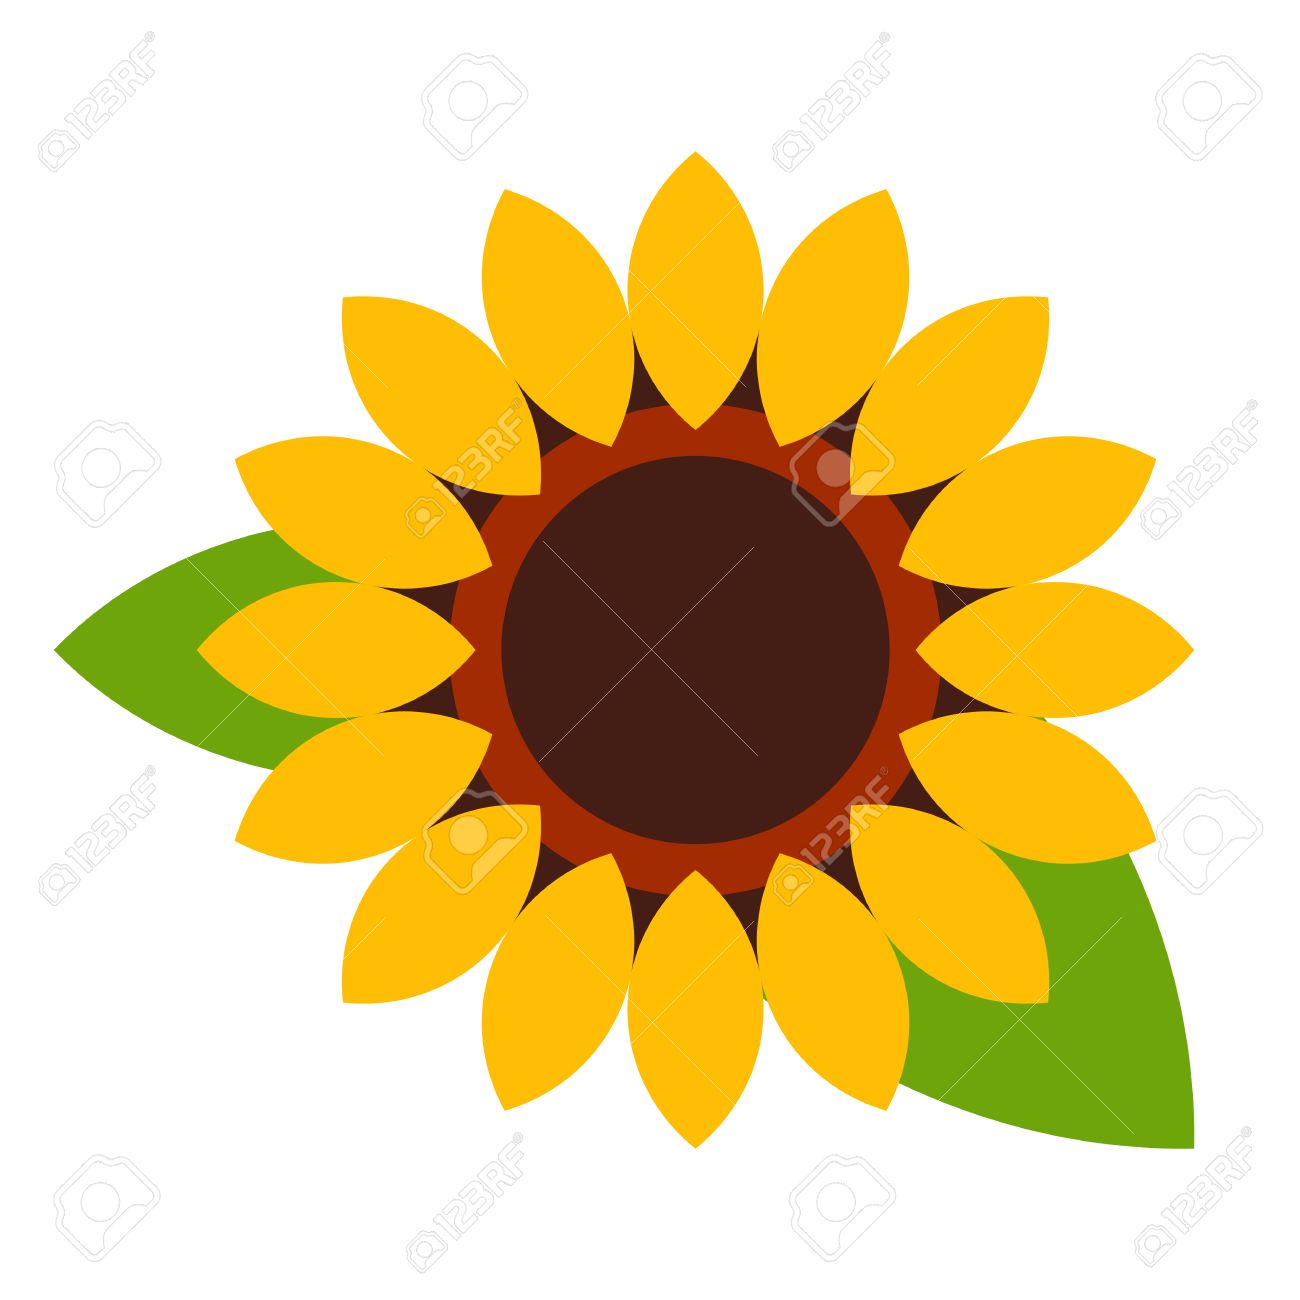 Sunflower - flower icon Stock Vector - 35852918